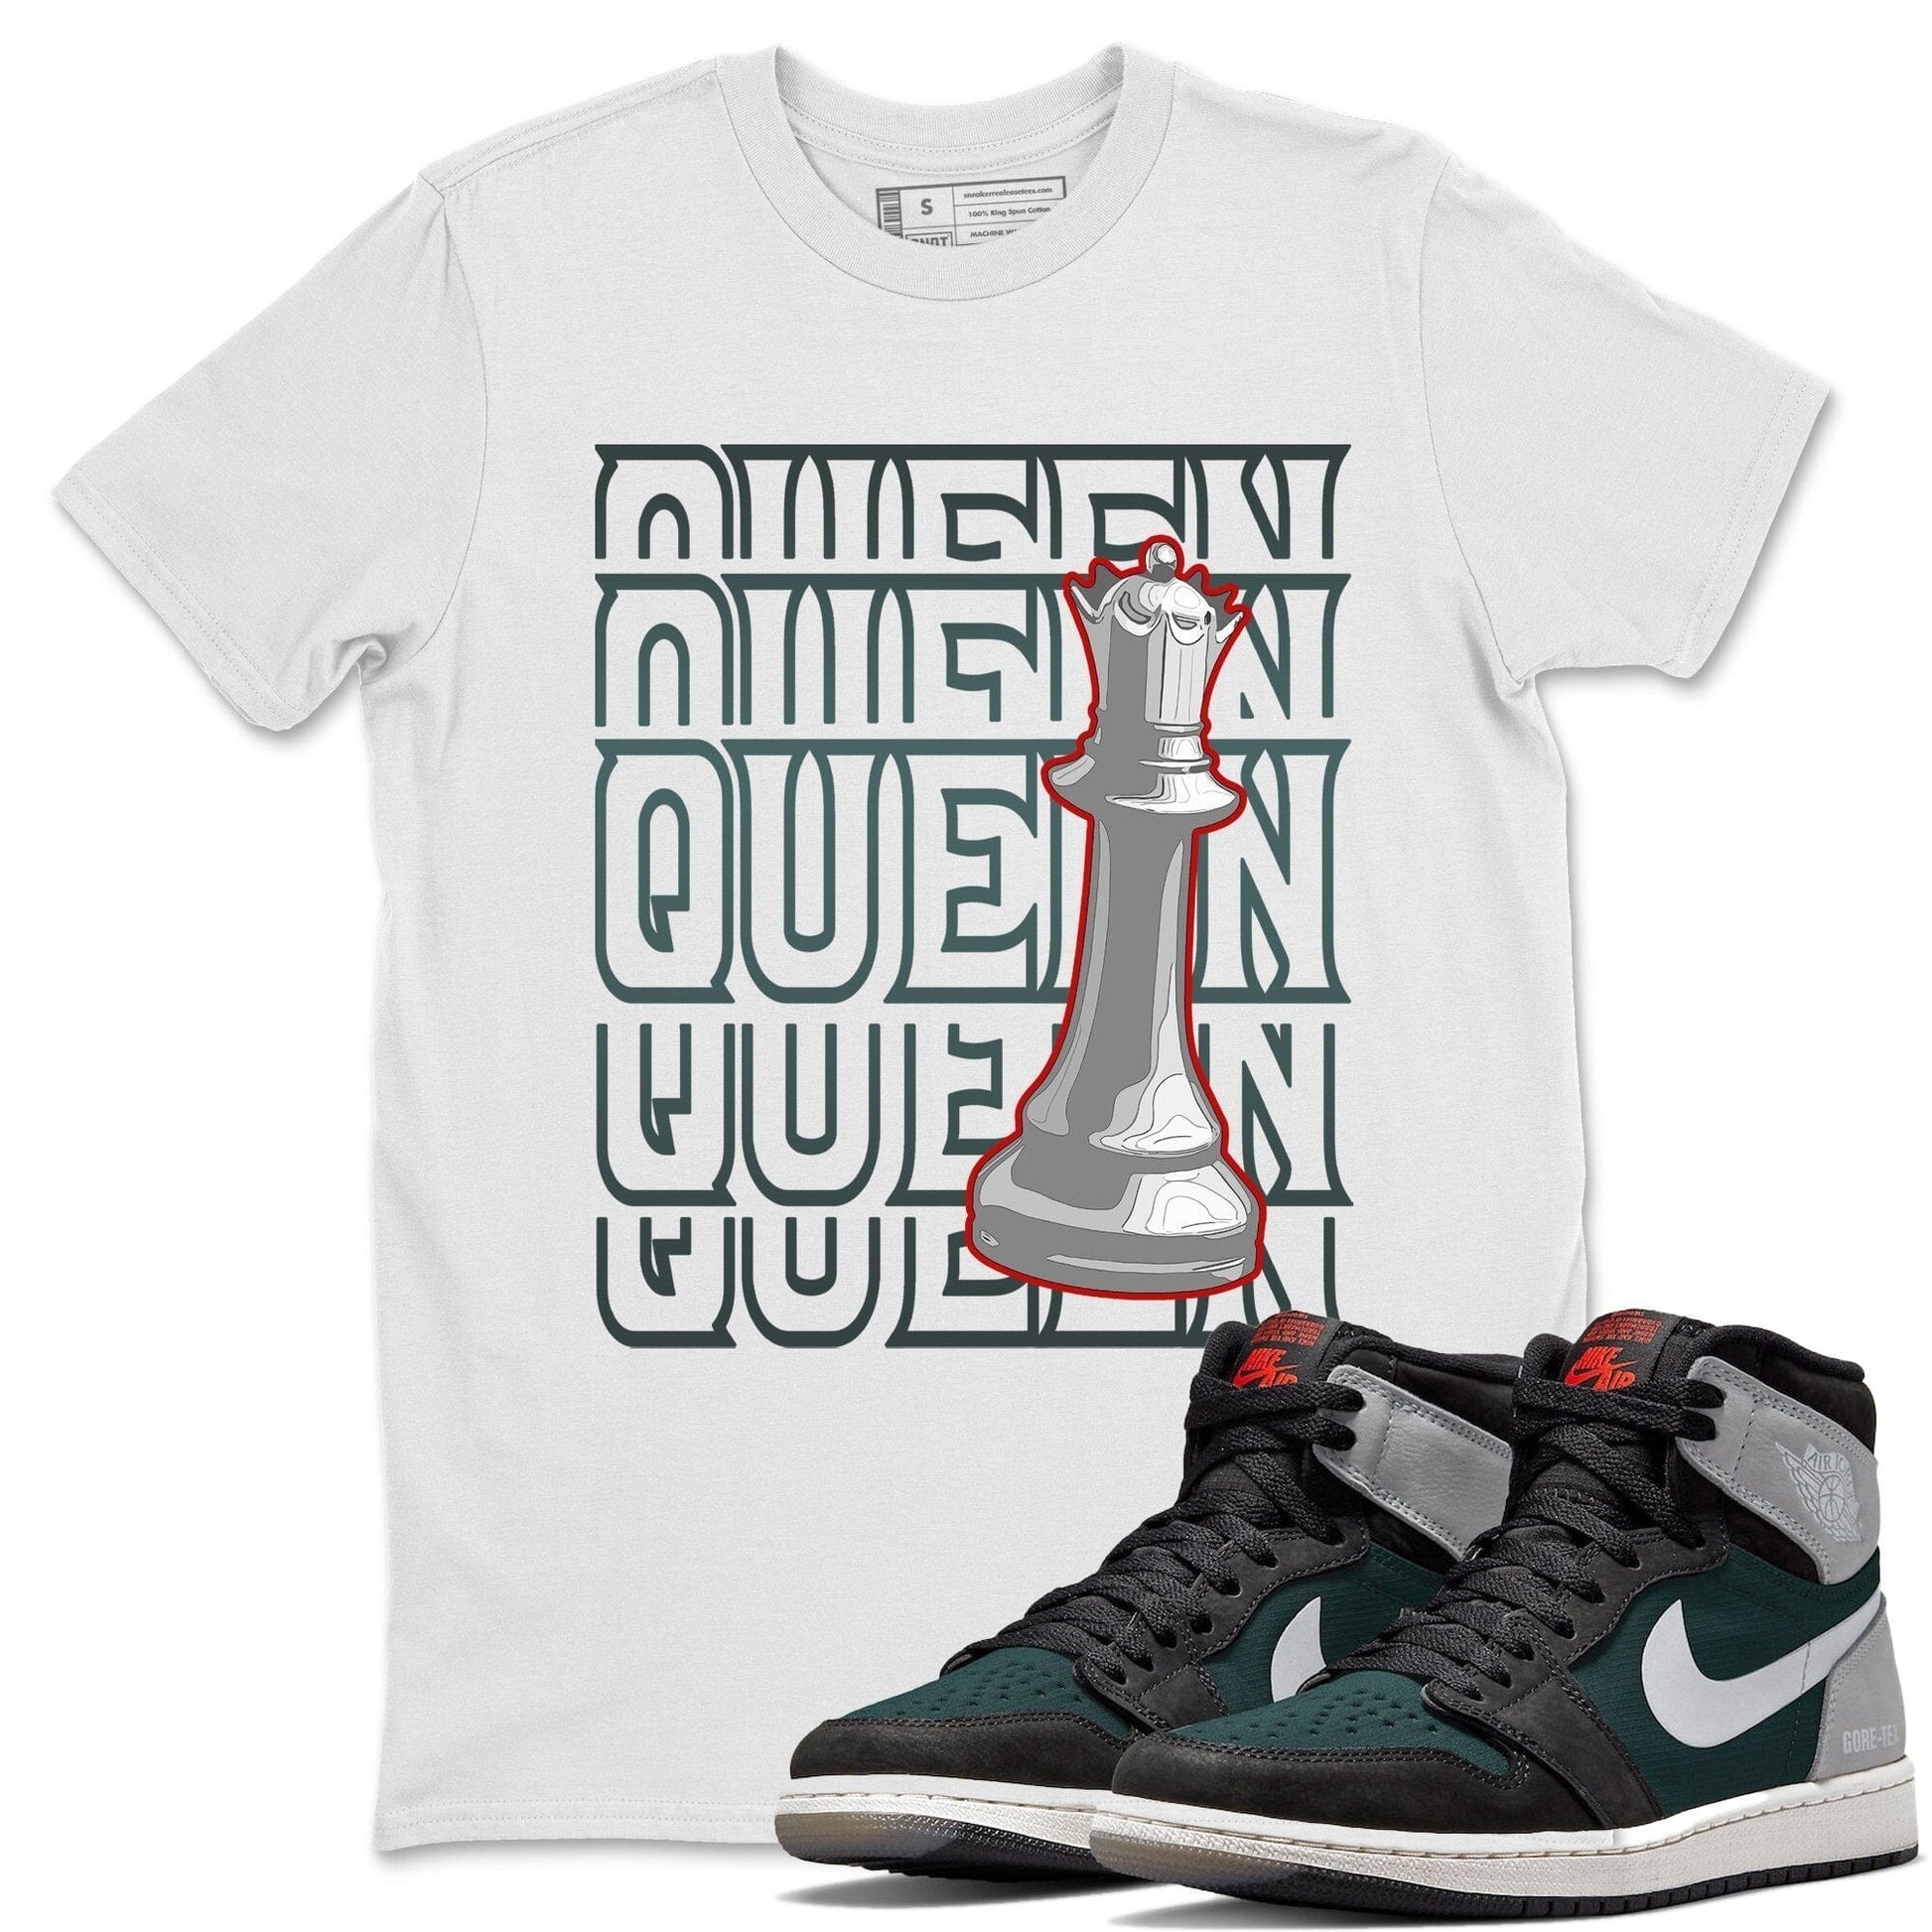 Jordan 1 Element Gore-Tex Black Grey Sneaker Match Tees Queen Sneaker Tees Jordan 1 Element Gore-Tex Black Grey Sneaker Release Tees Unisex Shirts